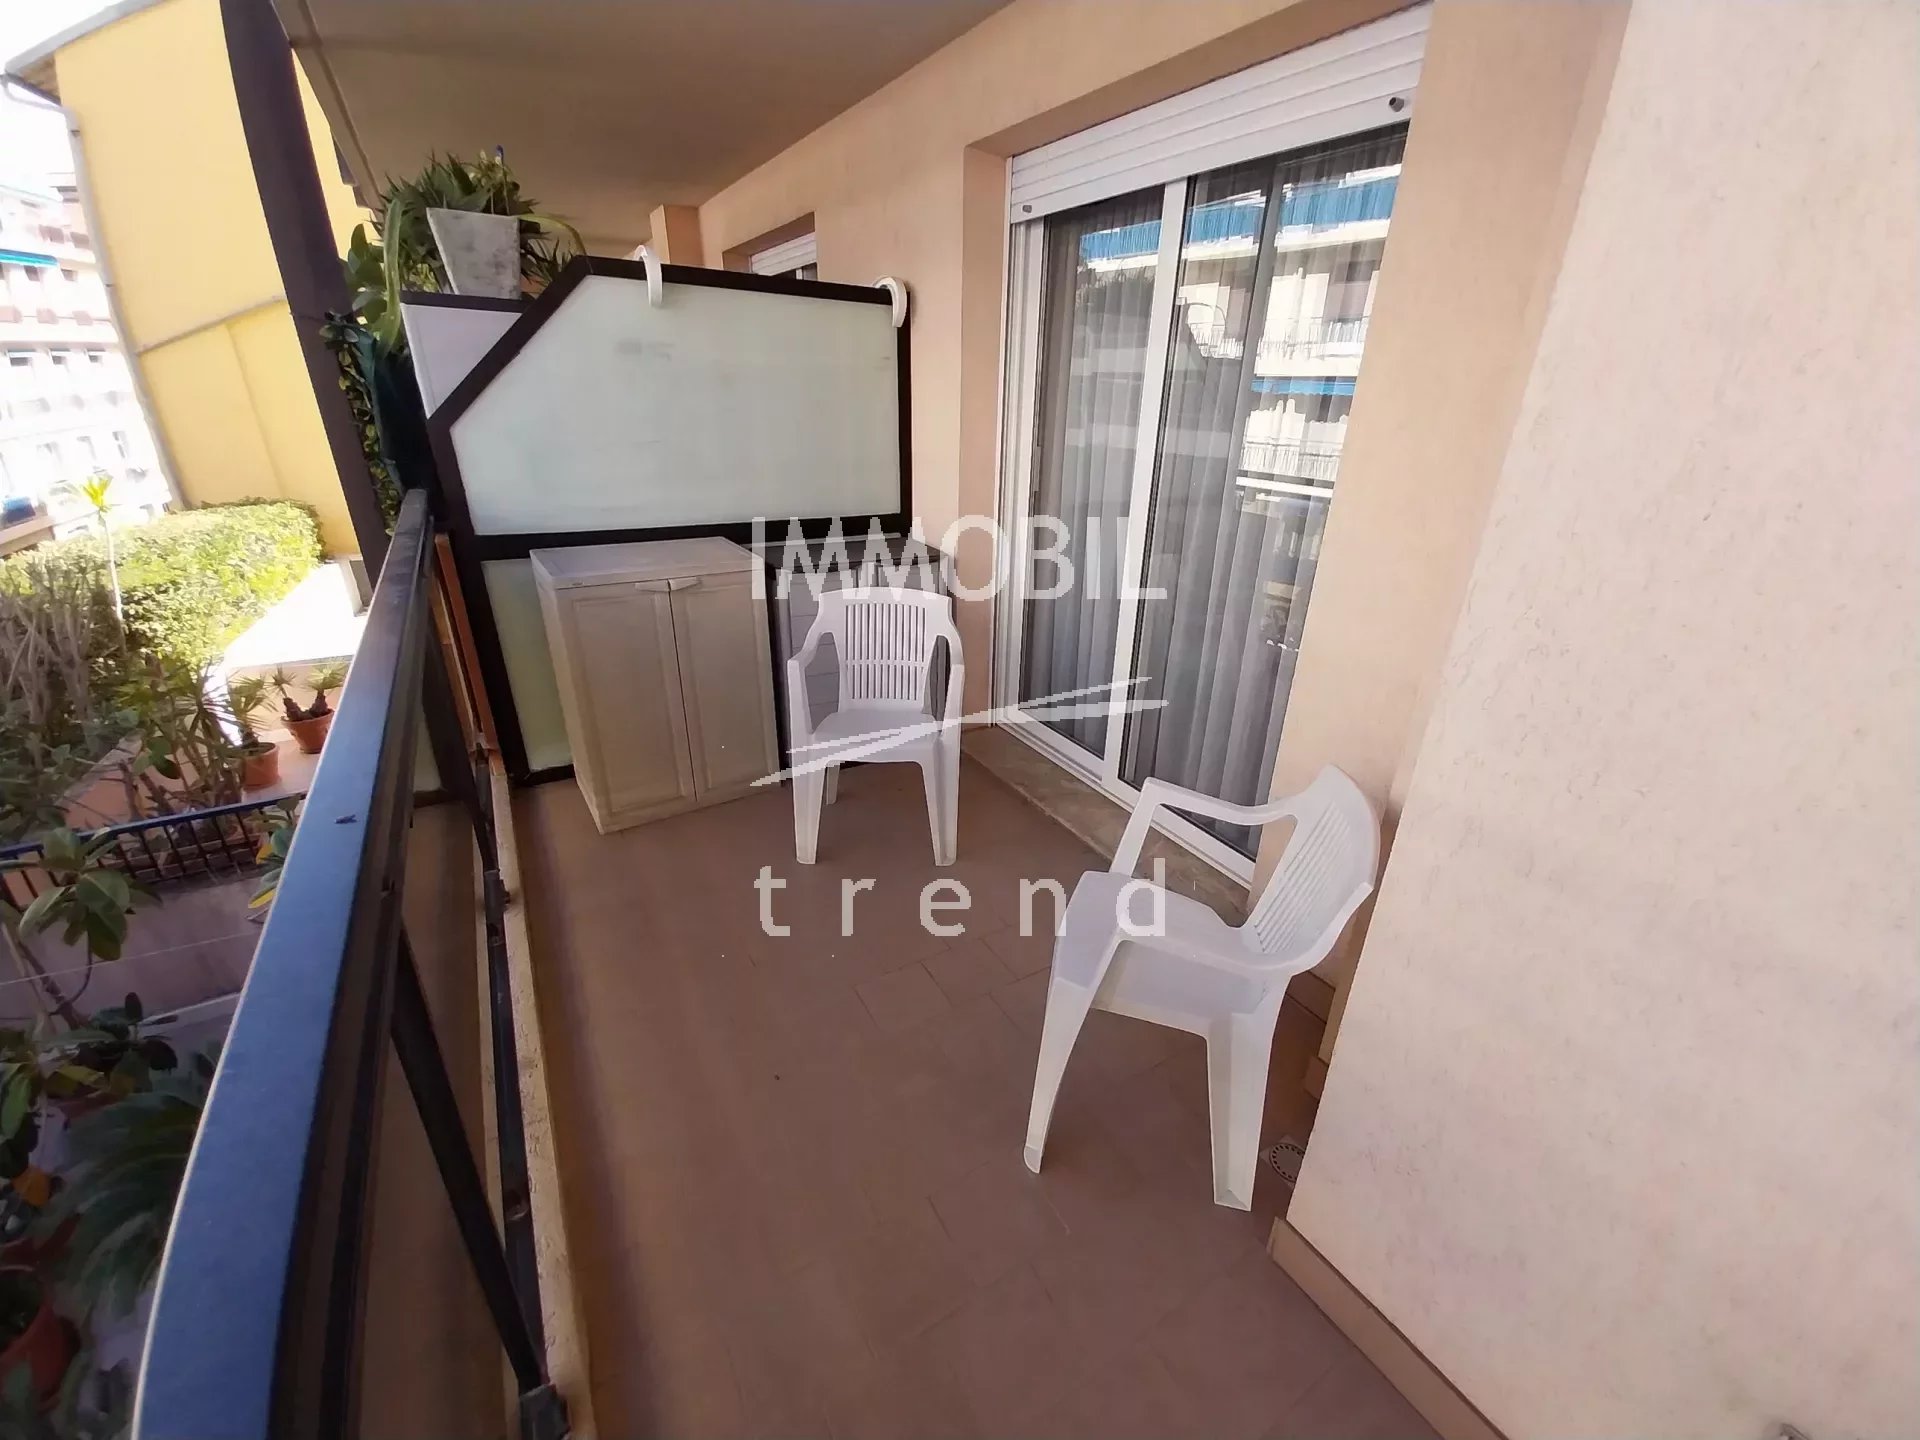 EXCLUSIVITE' MENTON CENTENAIRE - Appartement trois pièces traversant avec terrasse et balcon